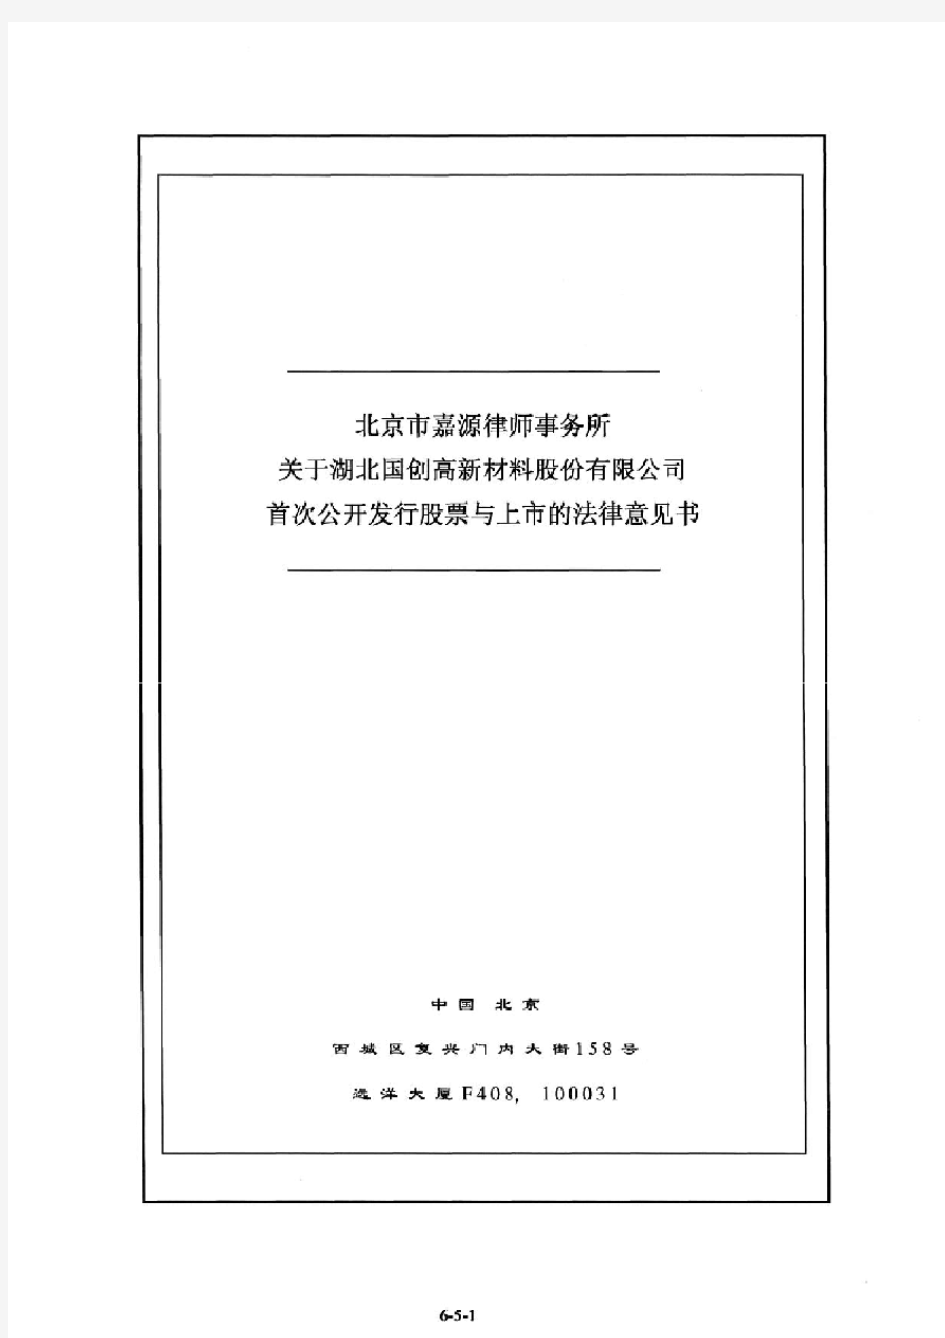 国创高新：北京市嘉源律师事务所关于公司首次公开发行股票与上市的补充法律意见书之一 2010-03-04